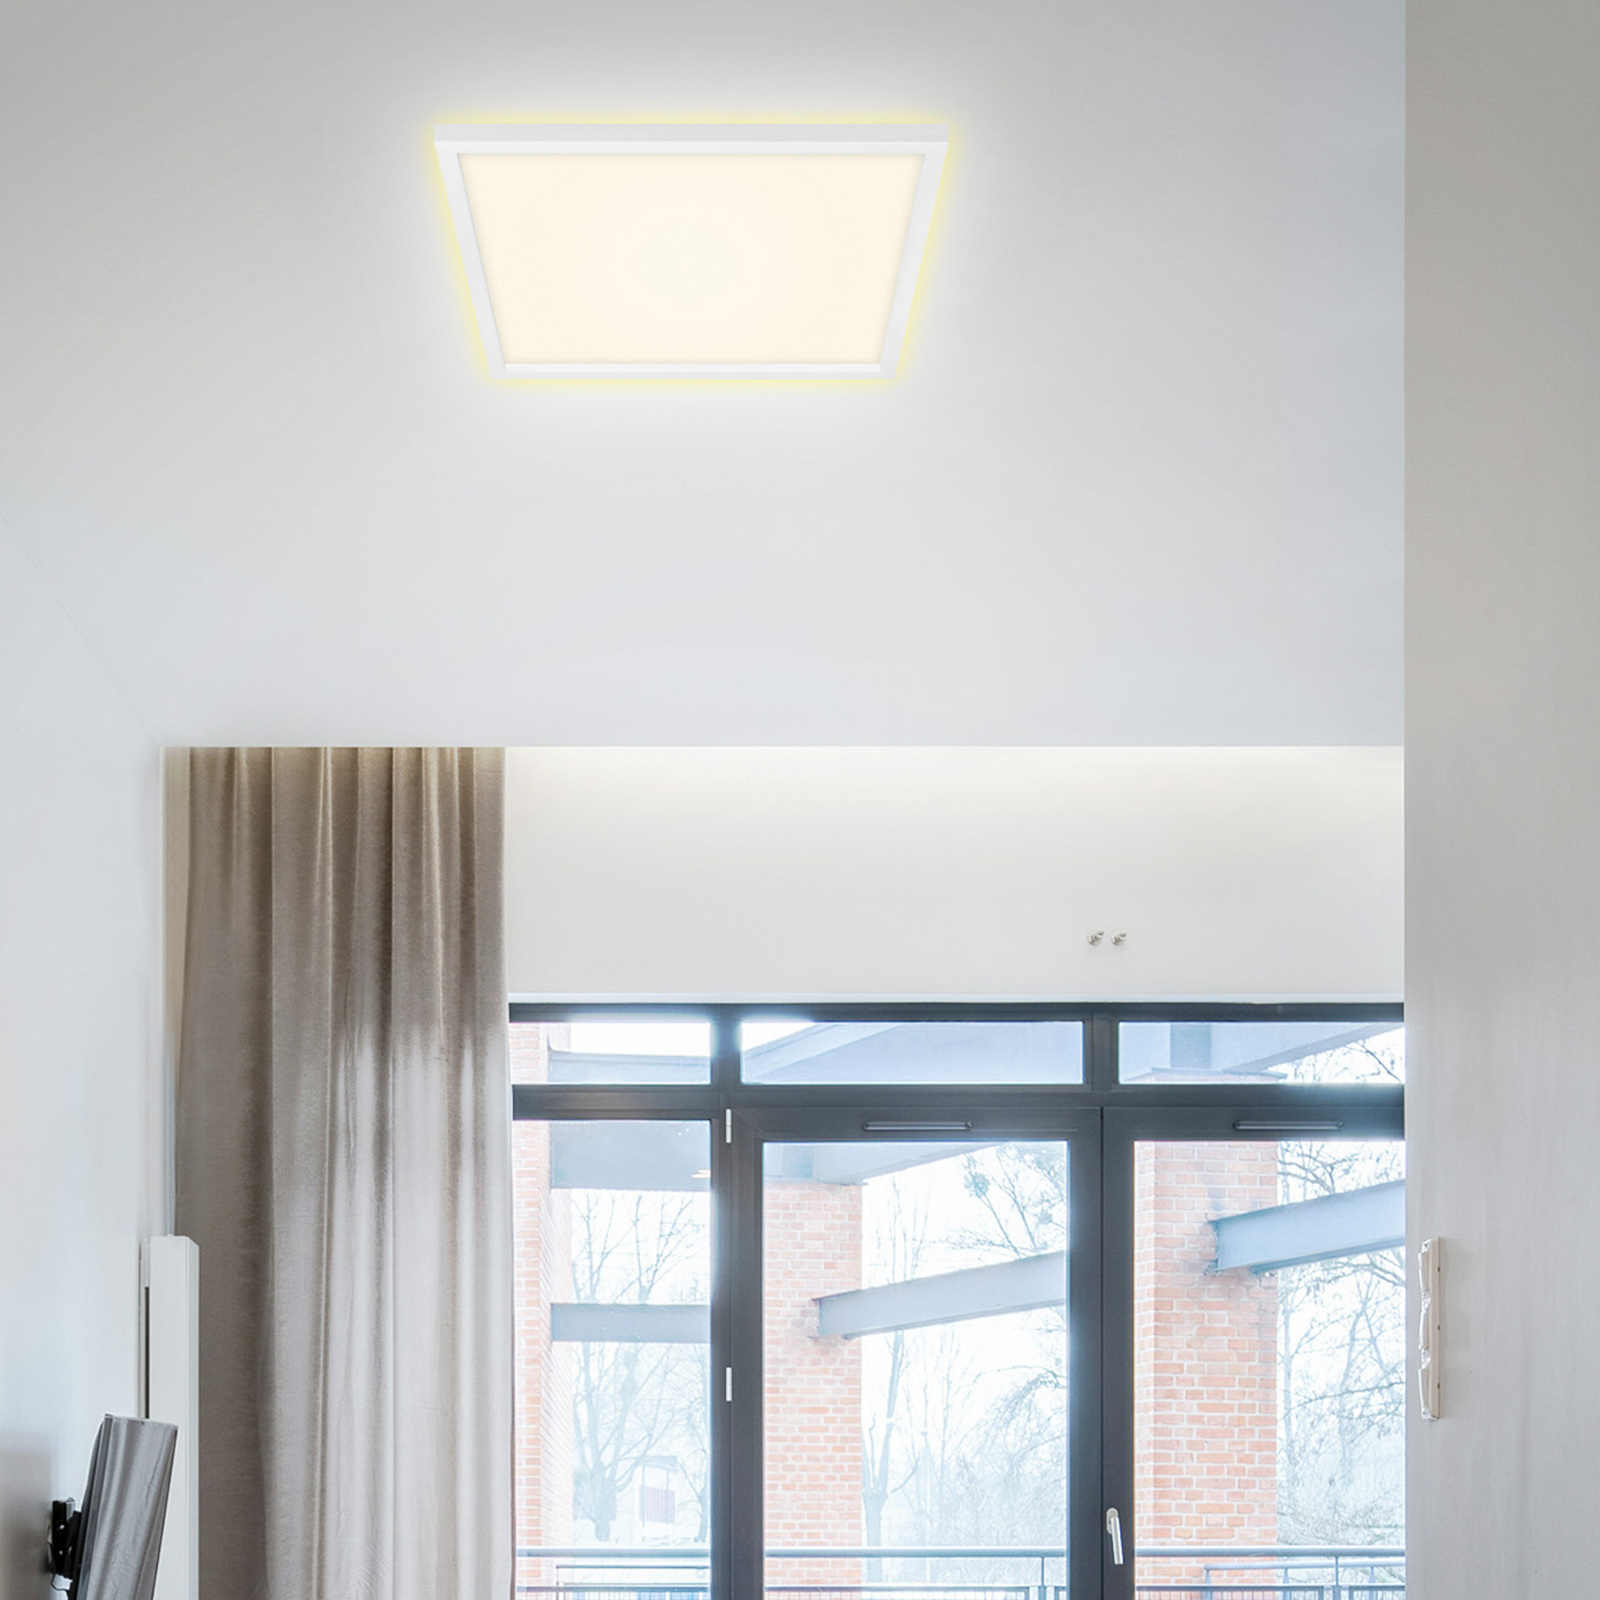 7364 LED ceiling lamp, 42 x 42 cm, white